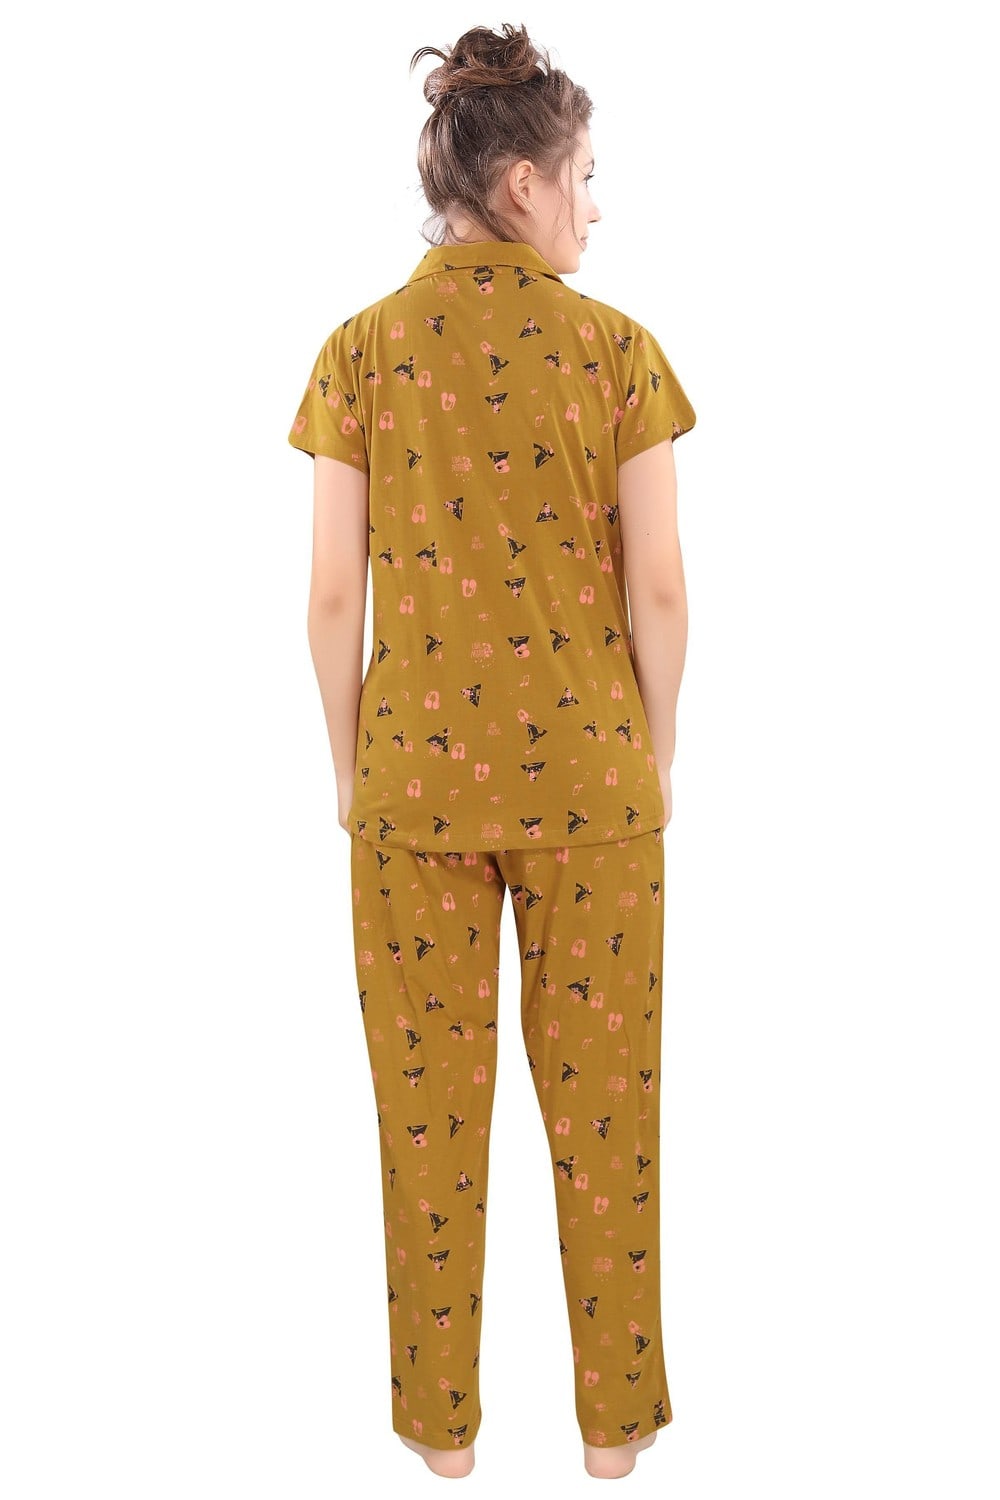 Pierre Donna Women's Cotton Pajama set With Pants - Women Sleepwear Golden Color - Dealz Souq